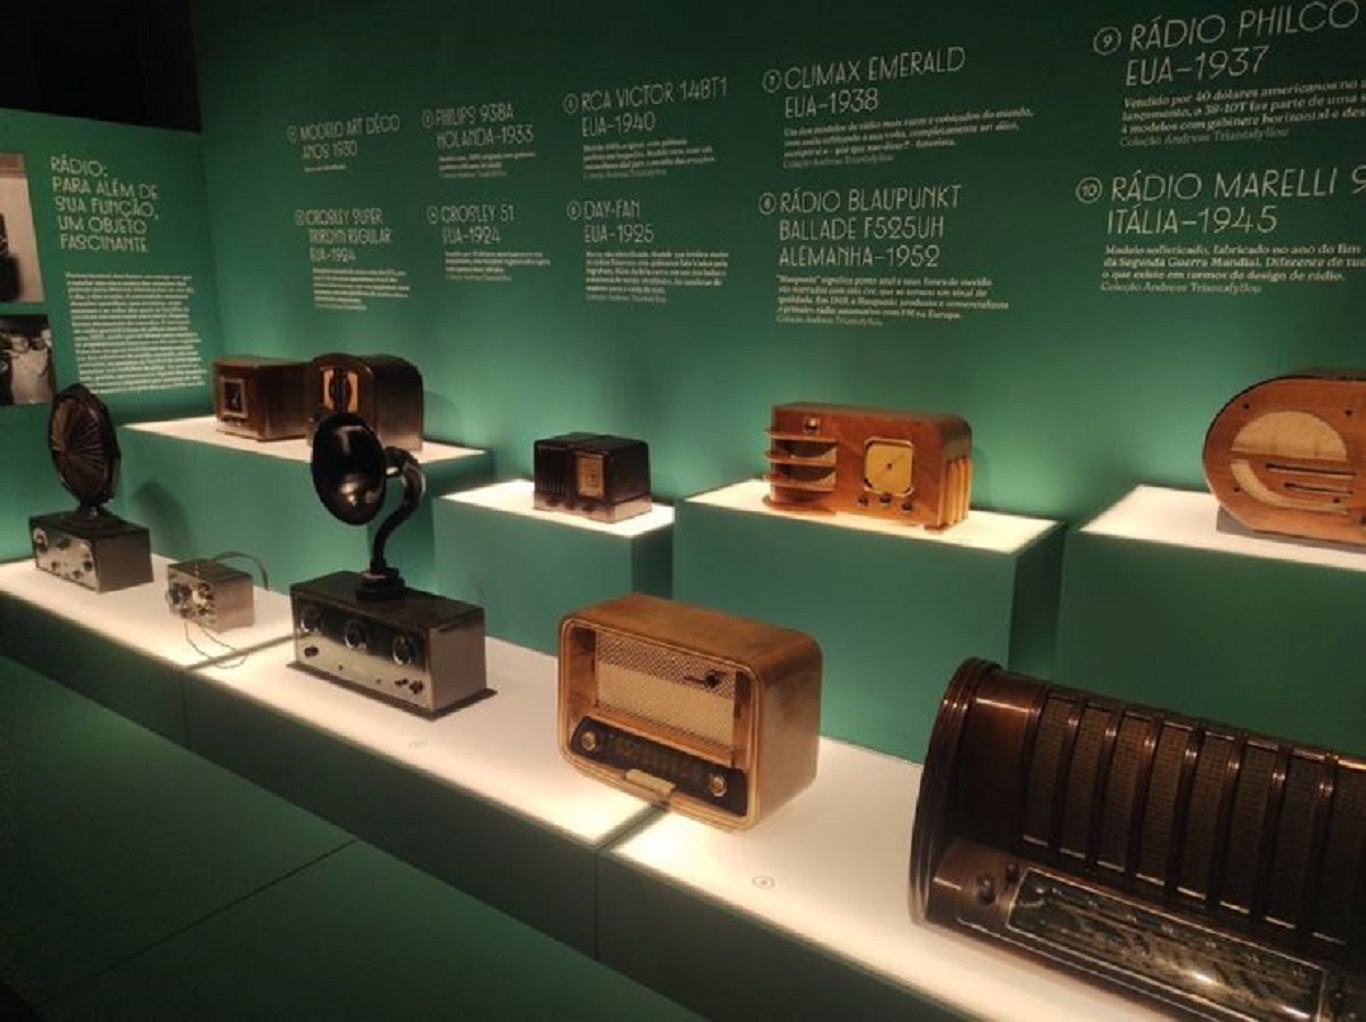 Diferentes tipos de aparelhos de rádio, de anos diferentes